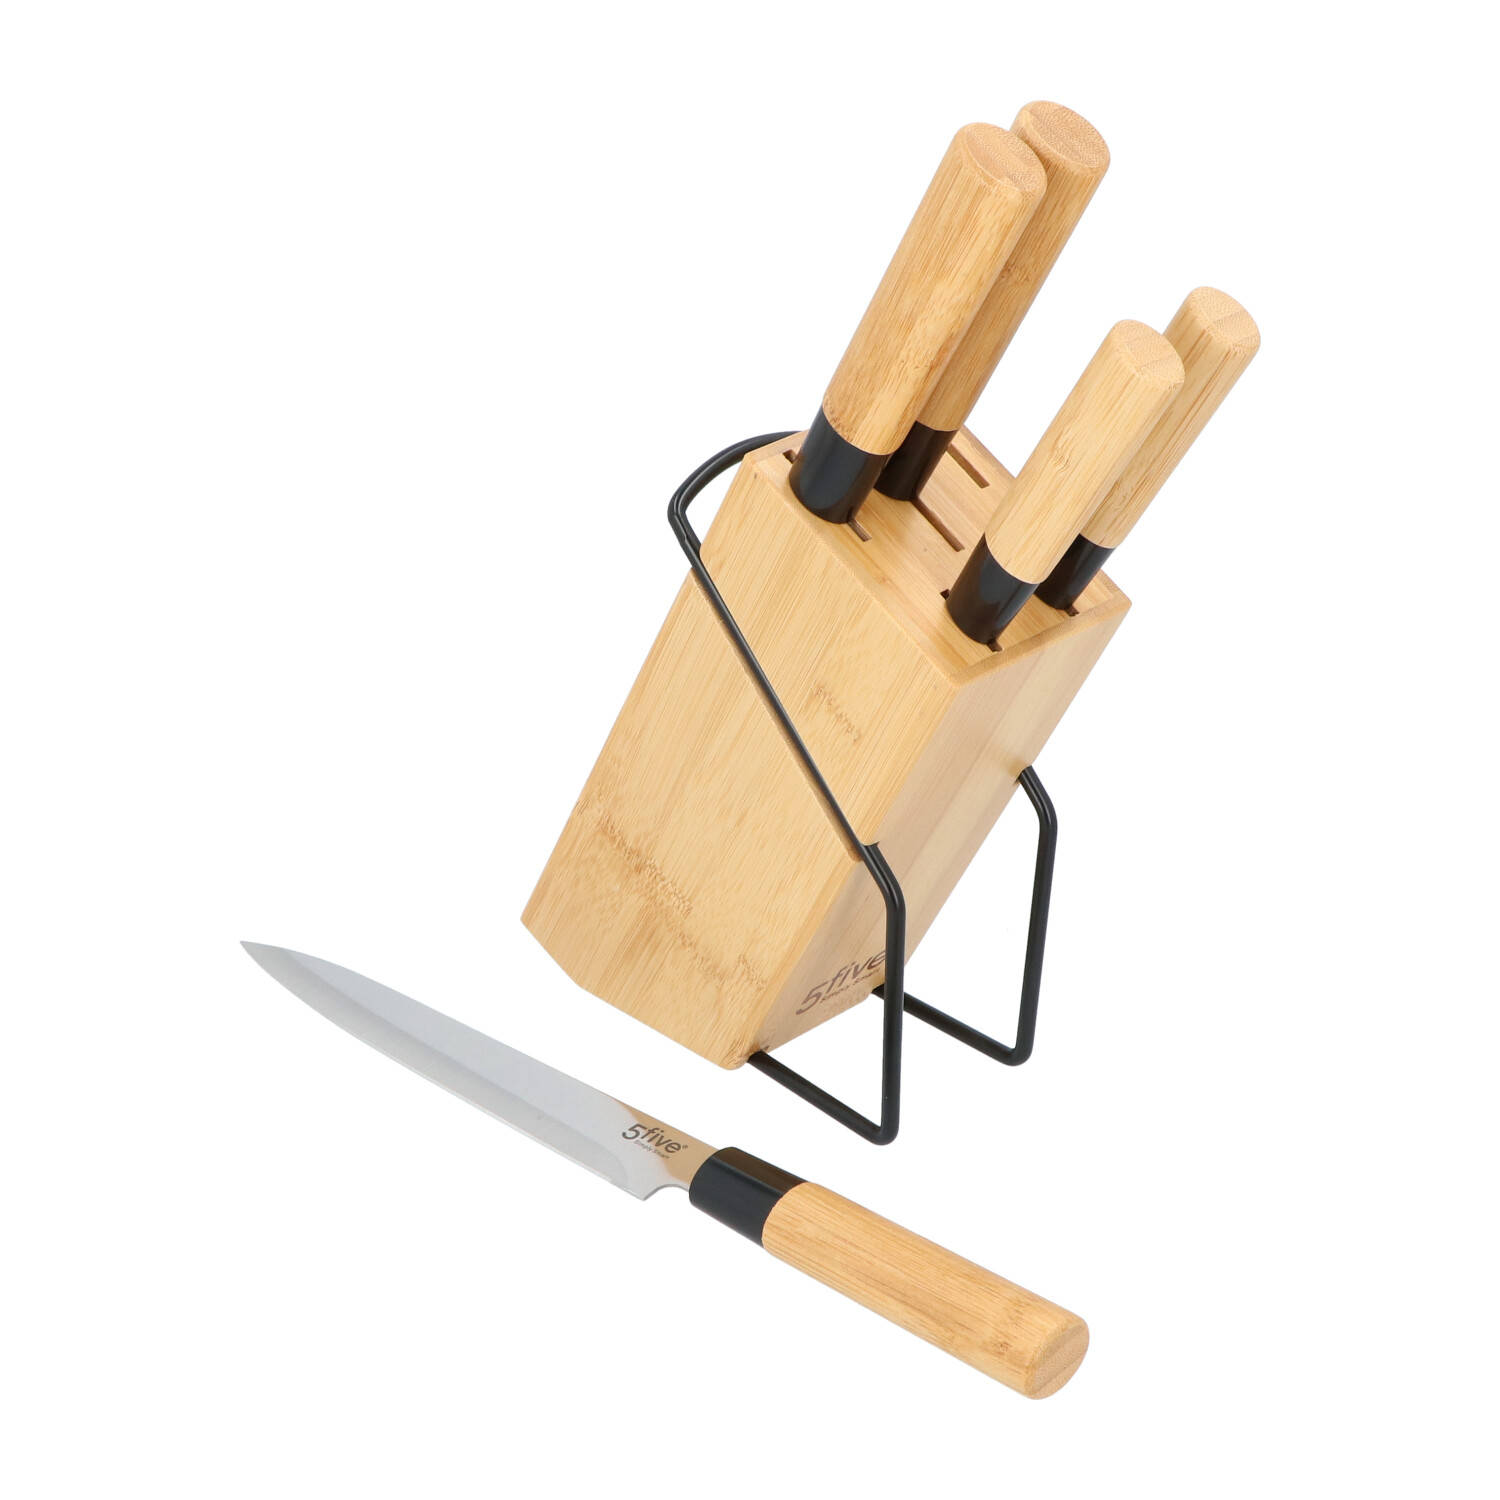 4goodz Messenblok Met 5 Messen Met Bamboe Handvat In Japanse Stijl